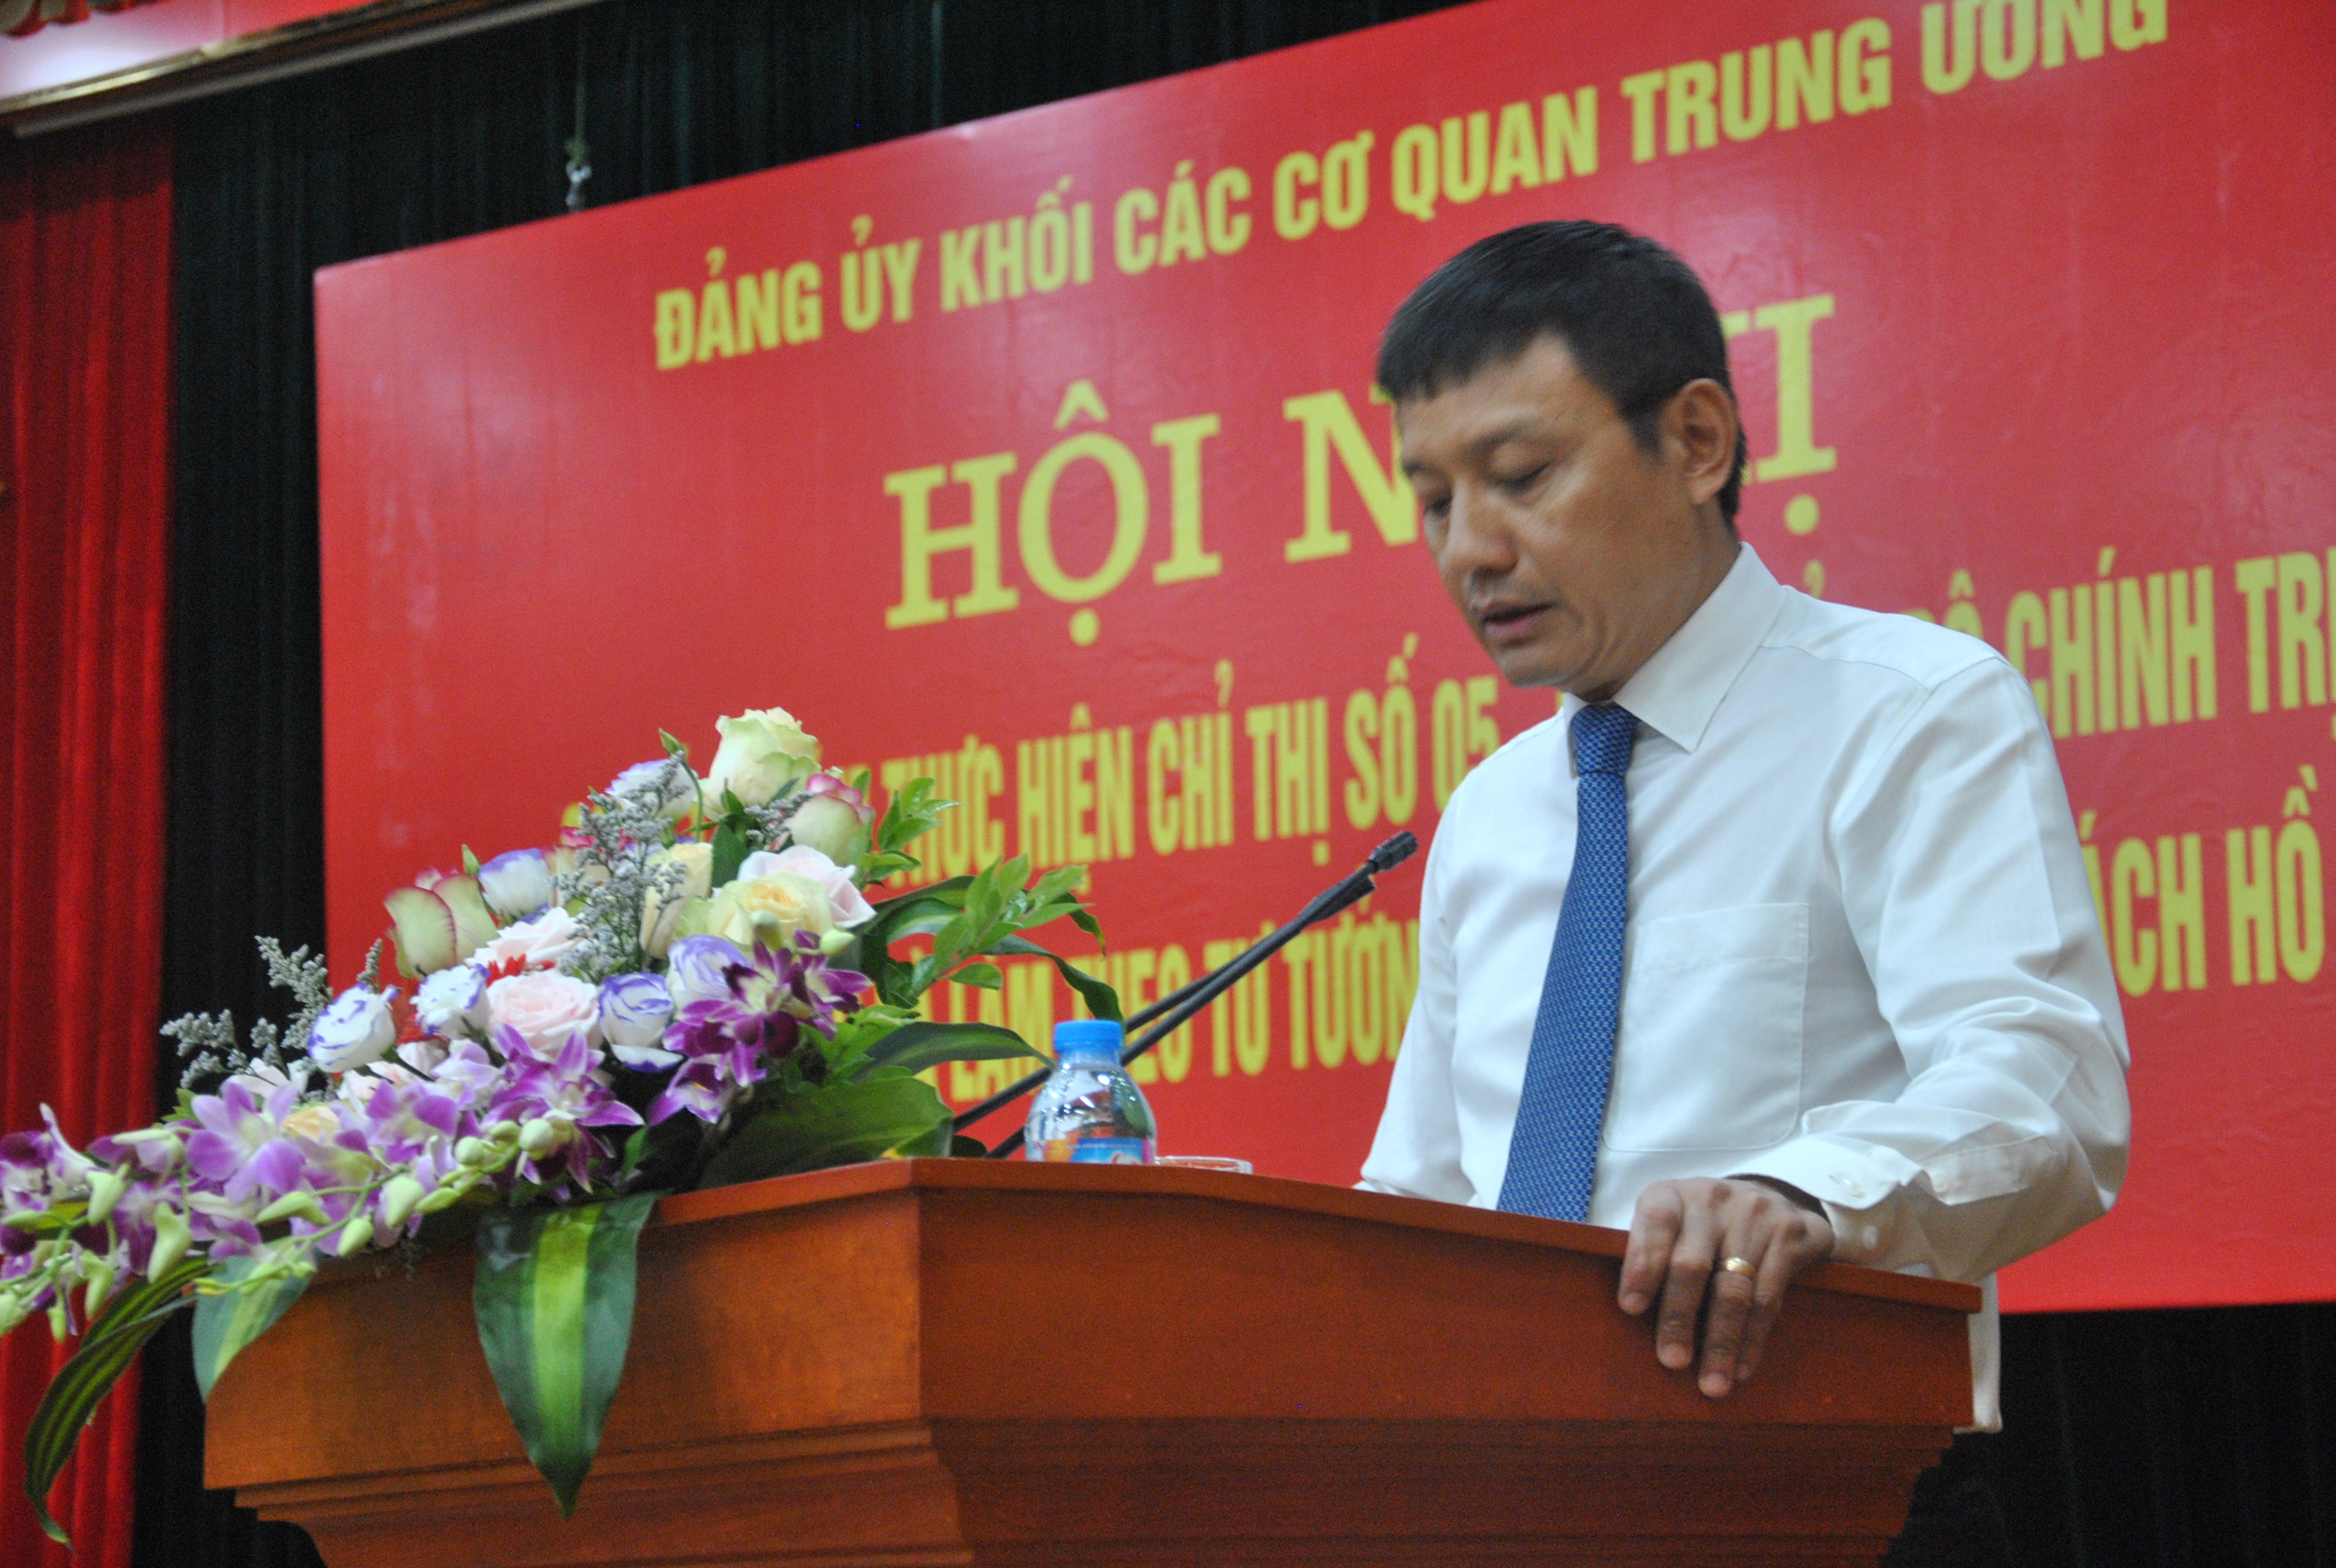 Đảng bộ Tổng công ty Quản lý bay Việt Nam vinh dự đón nhận Bằng khen của Đảng ủy Khối các cơ quan Trung ương